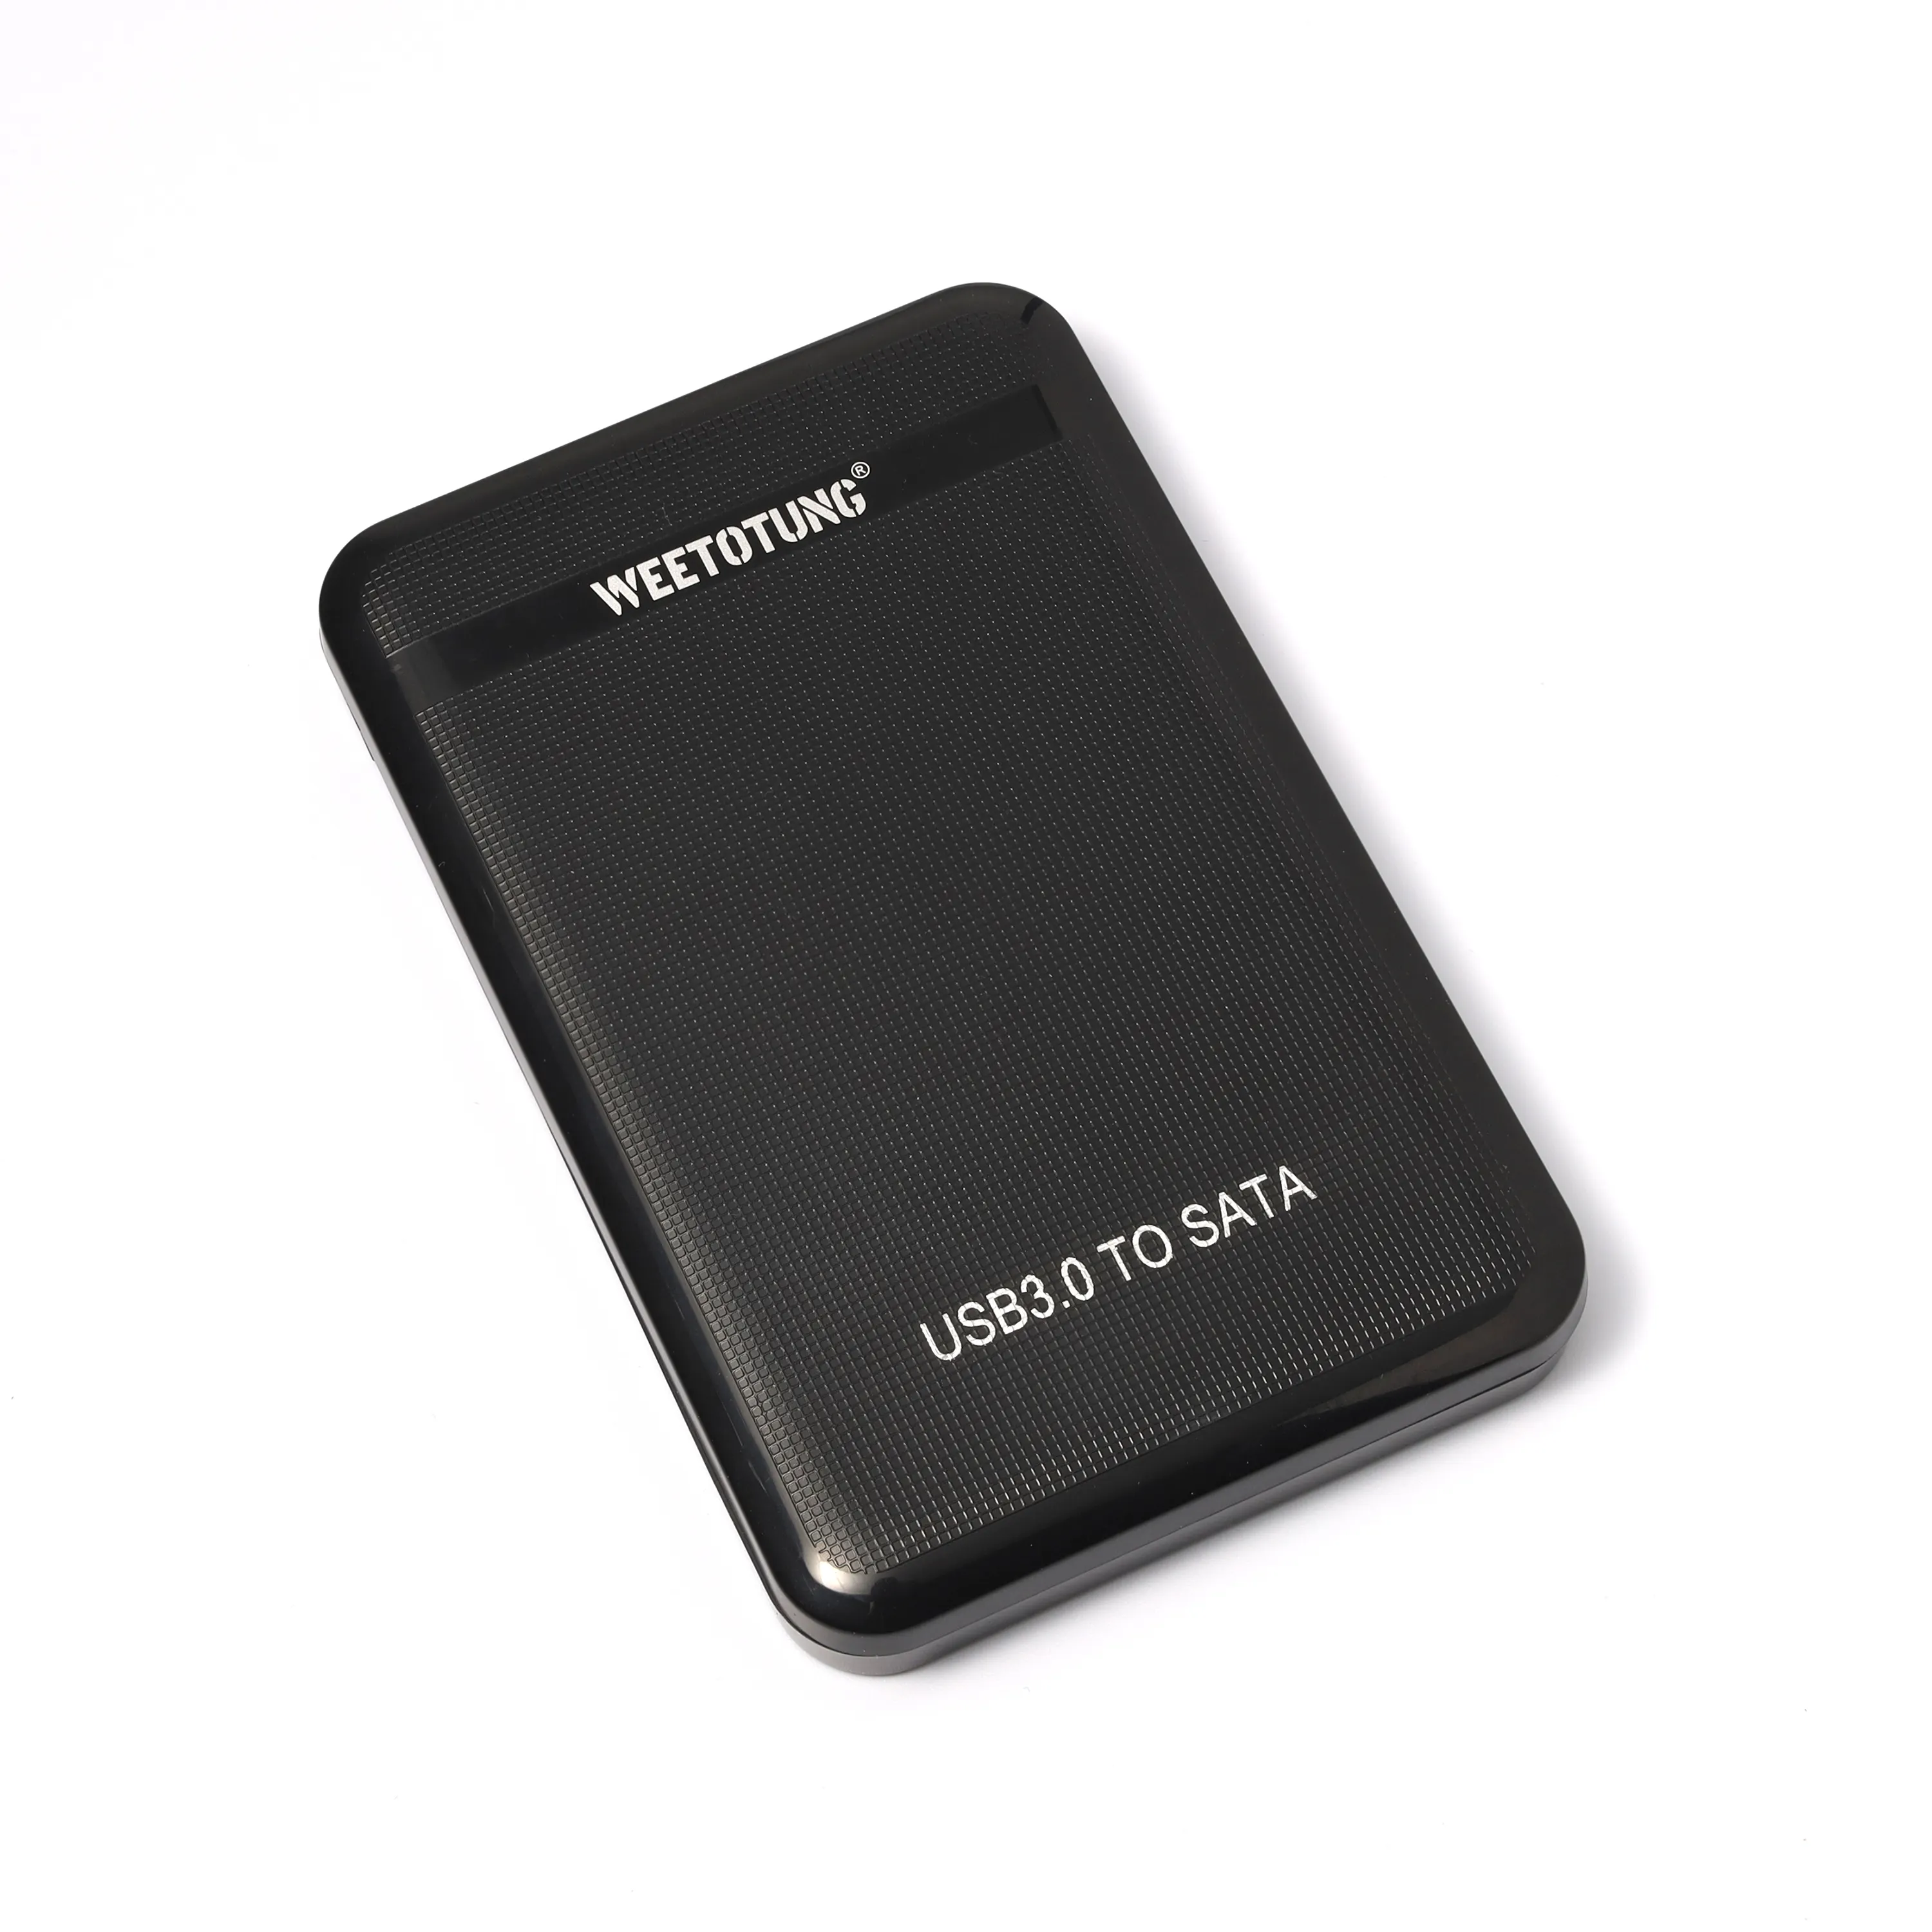 WEETOTUNG 2.5 "HDD durumda USB3.0 SATA sabit disk muhafaza